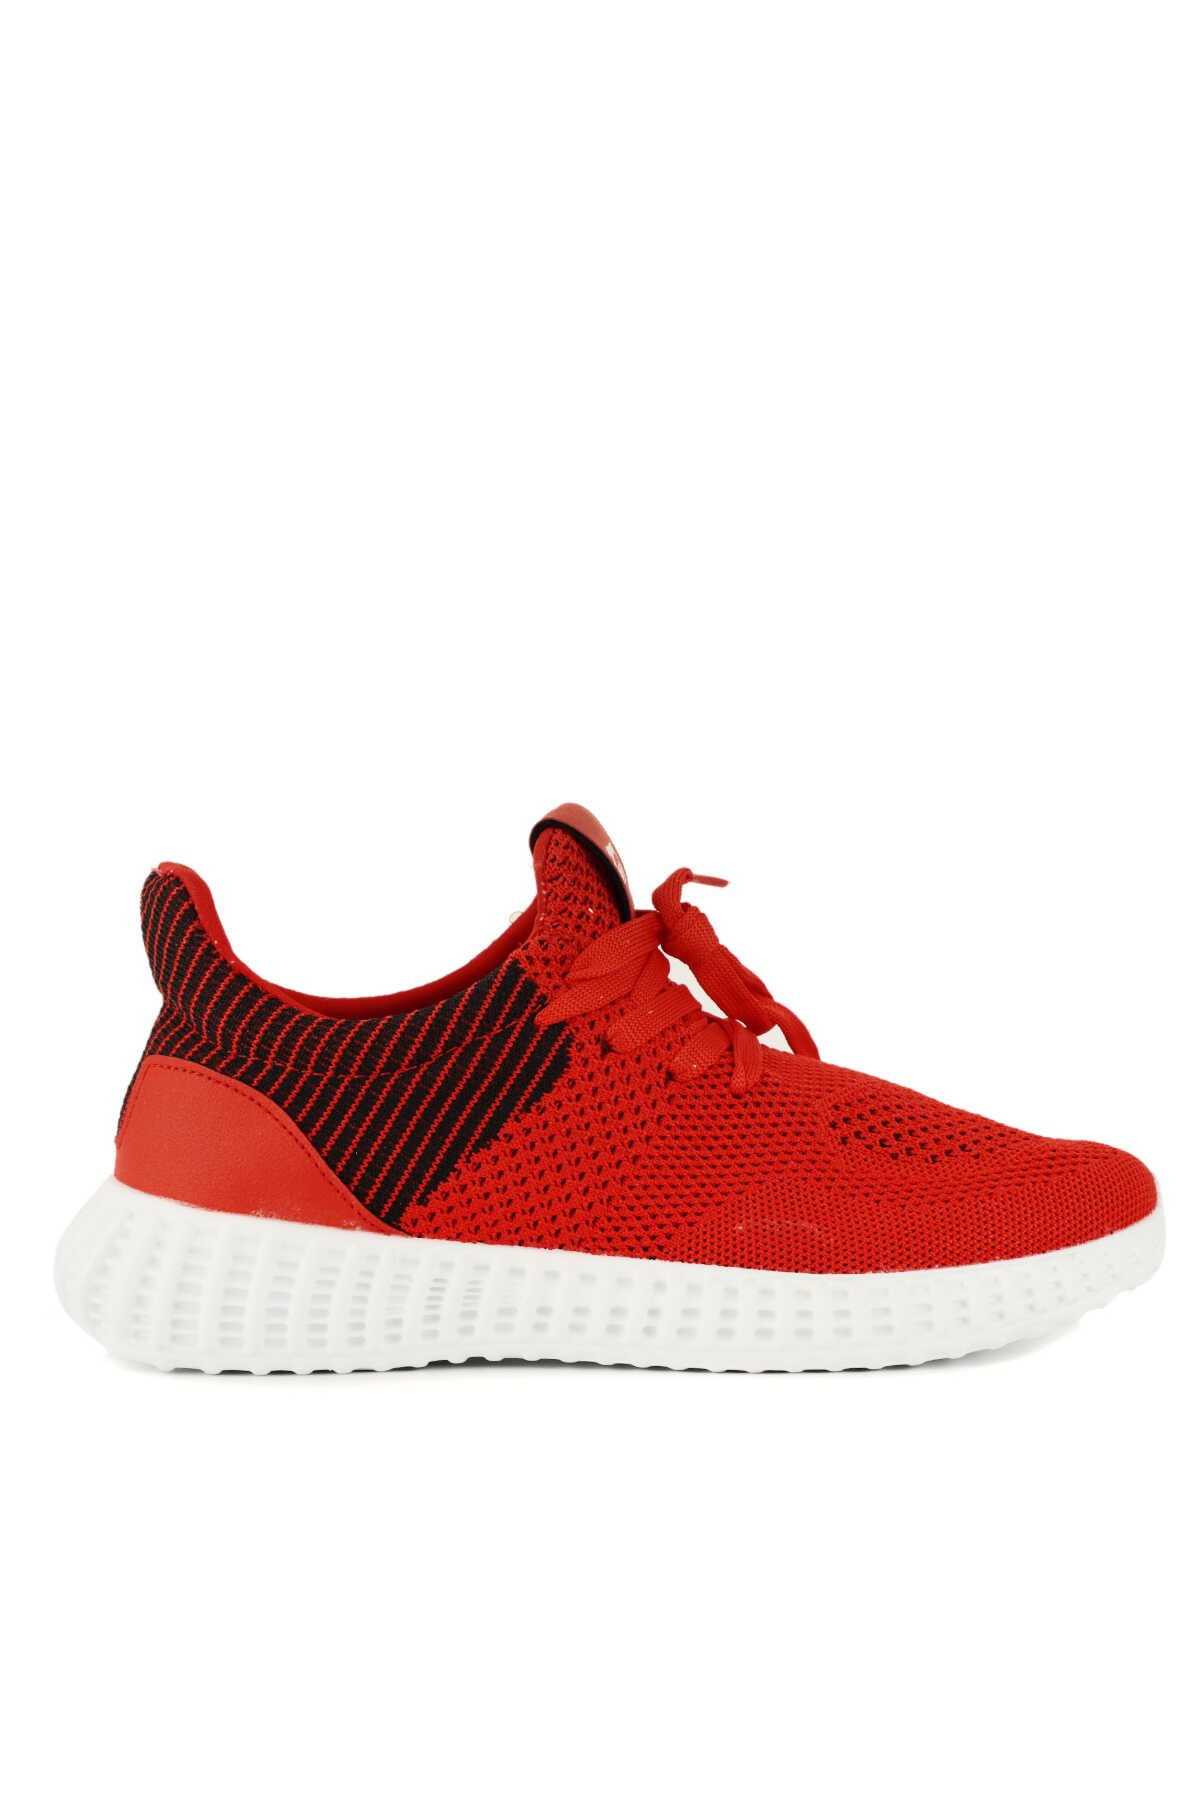 Slazenger - Slazenger ATOMIC Sneaker Erkek Ayakkabı Kırmızı